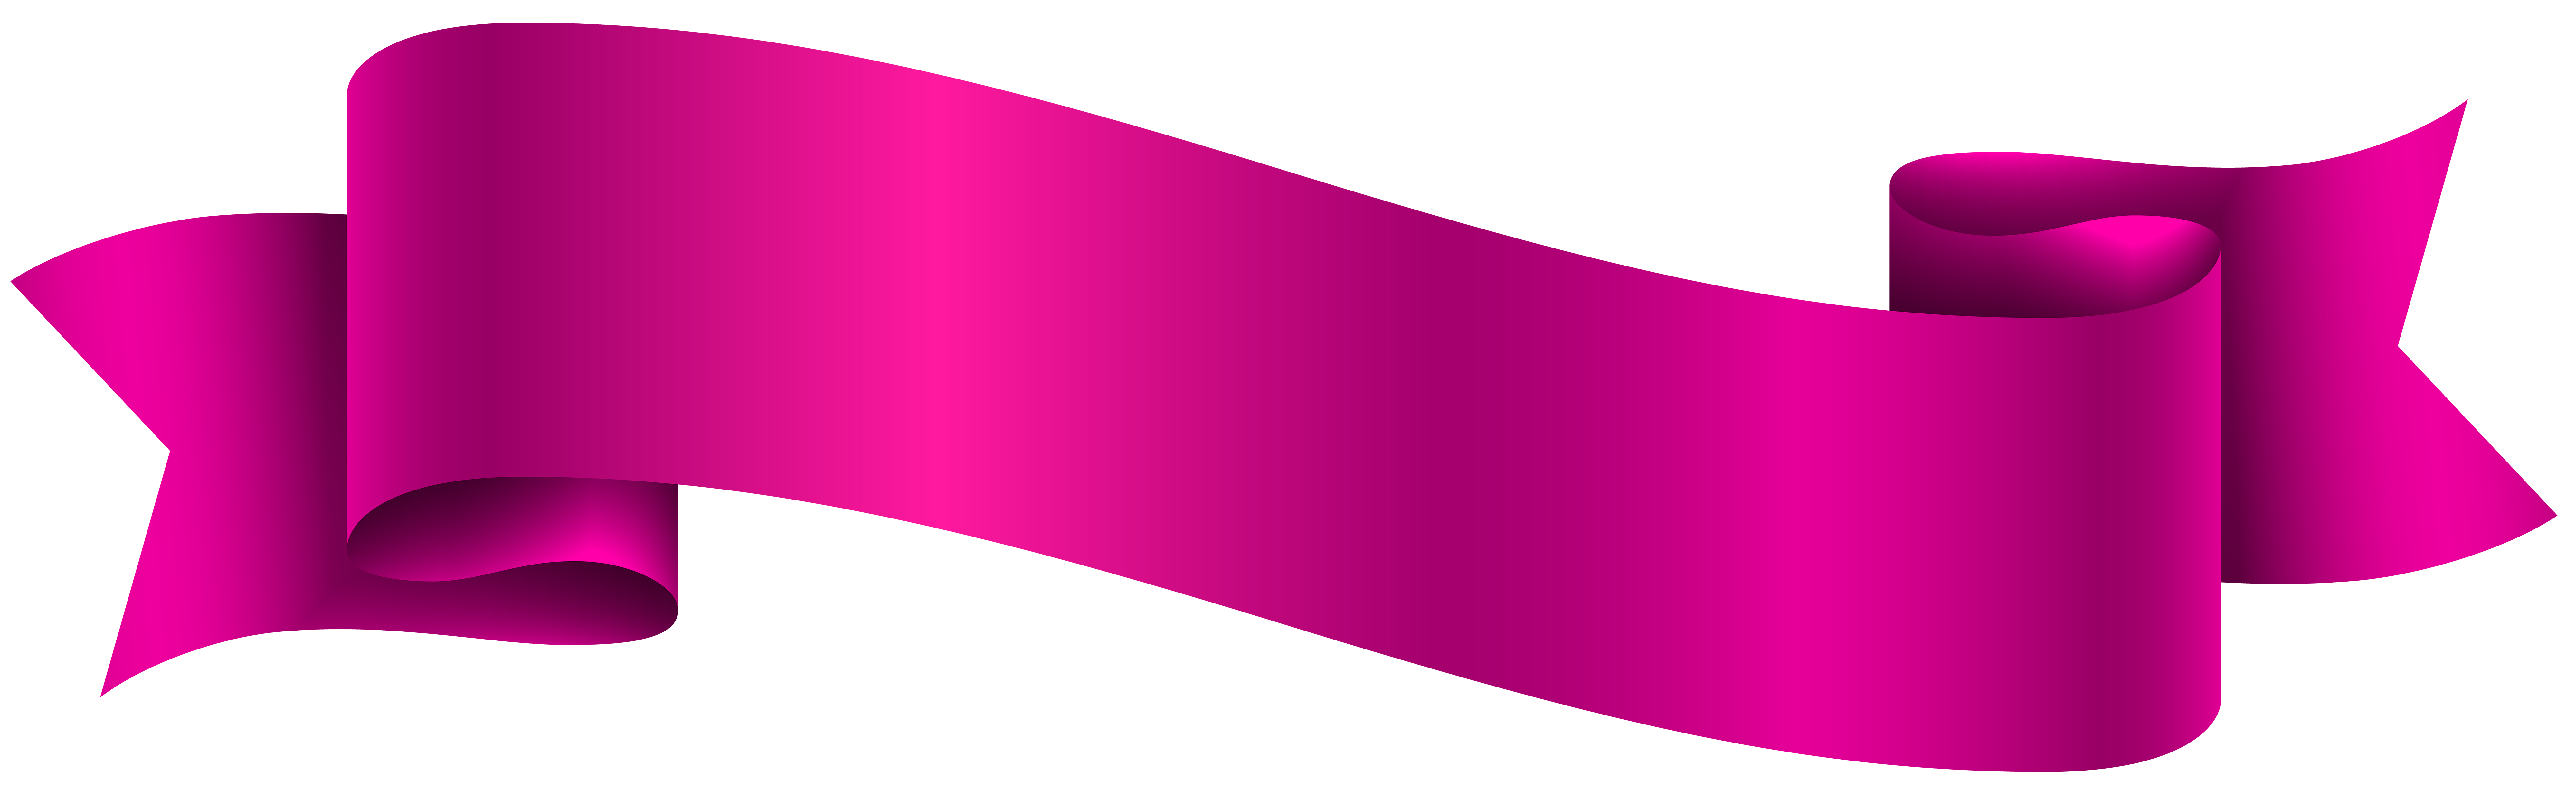 Фиолетовый баннер PNG высококачественный образ